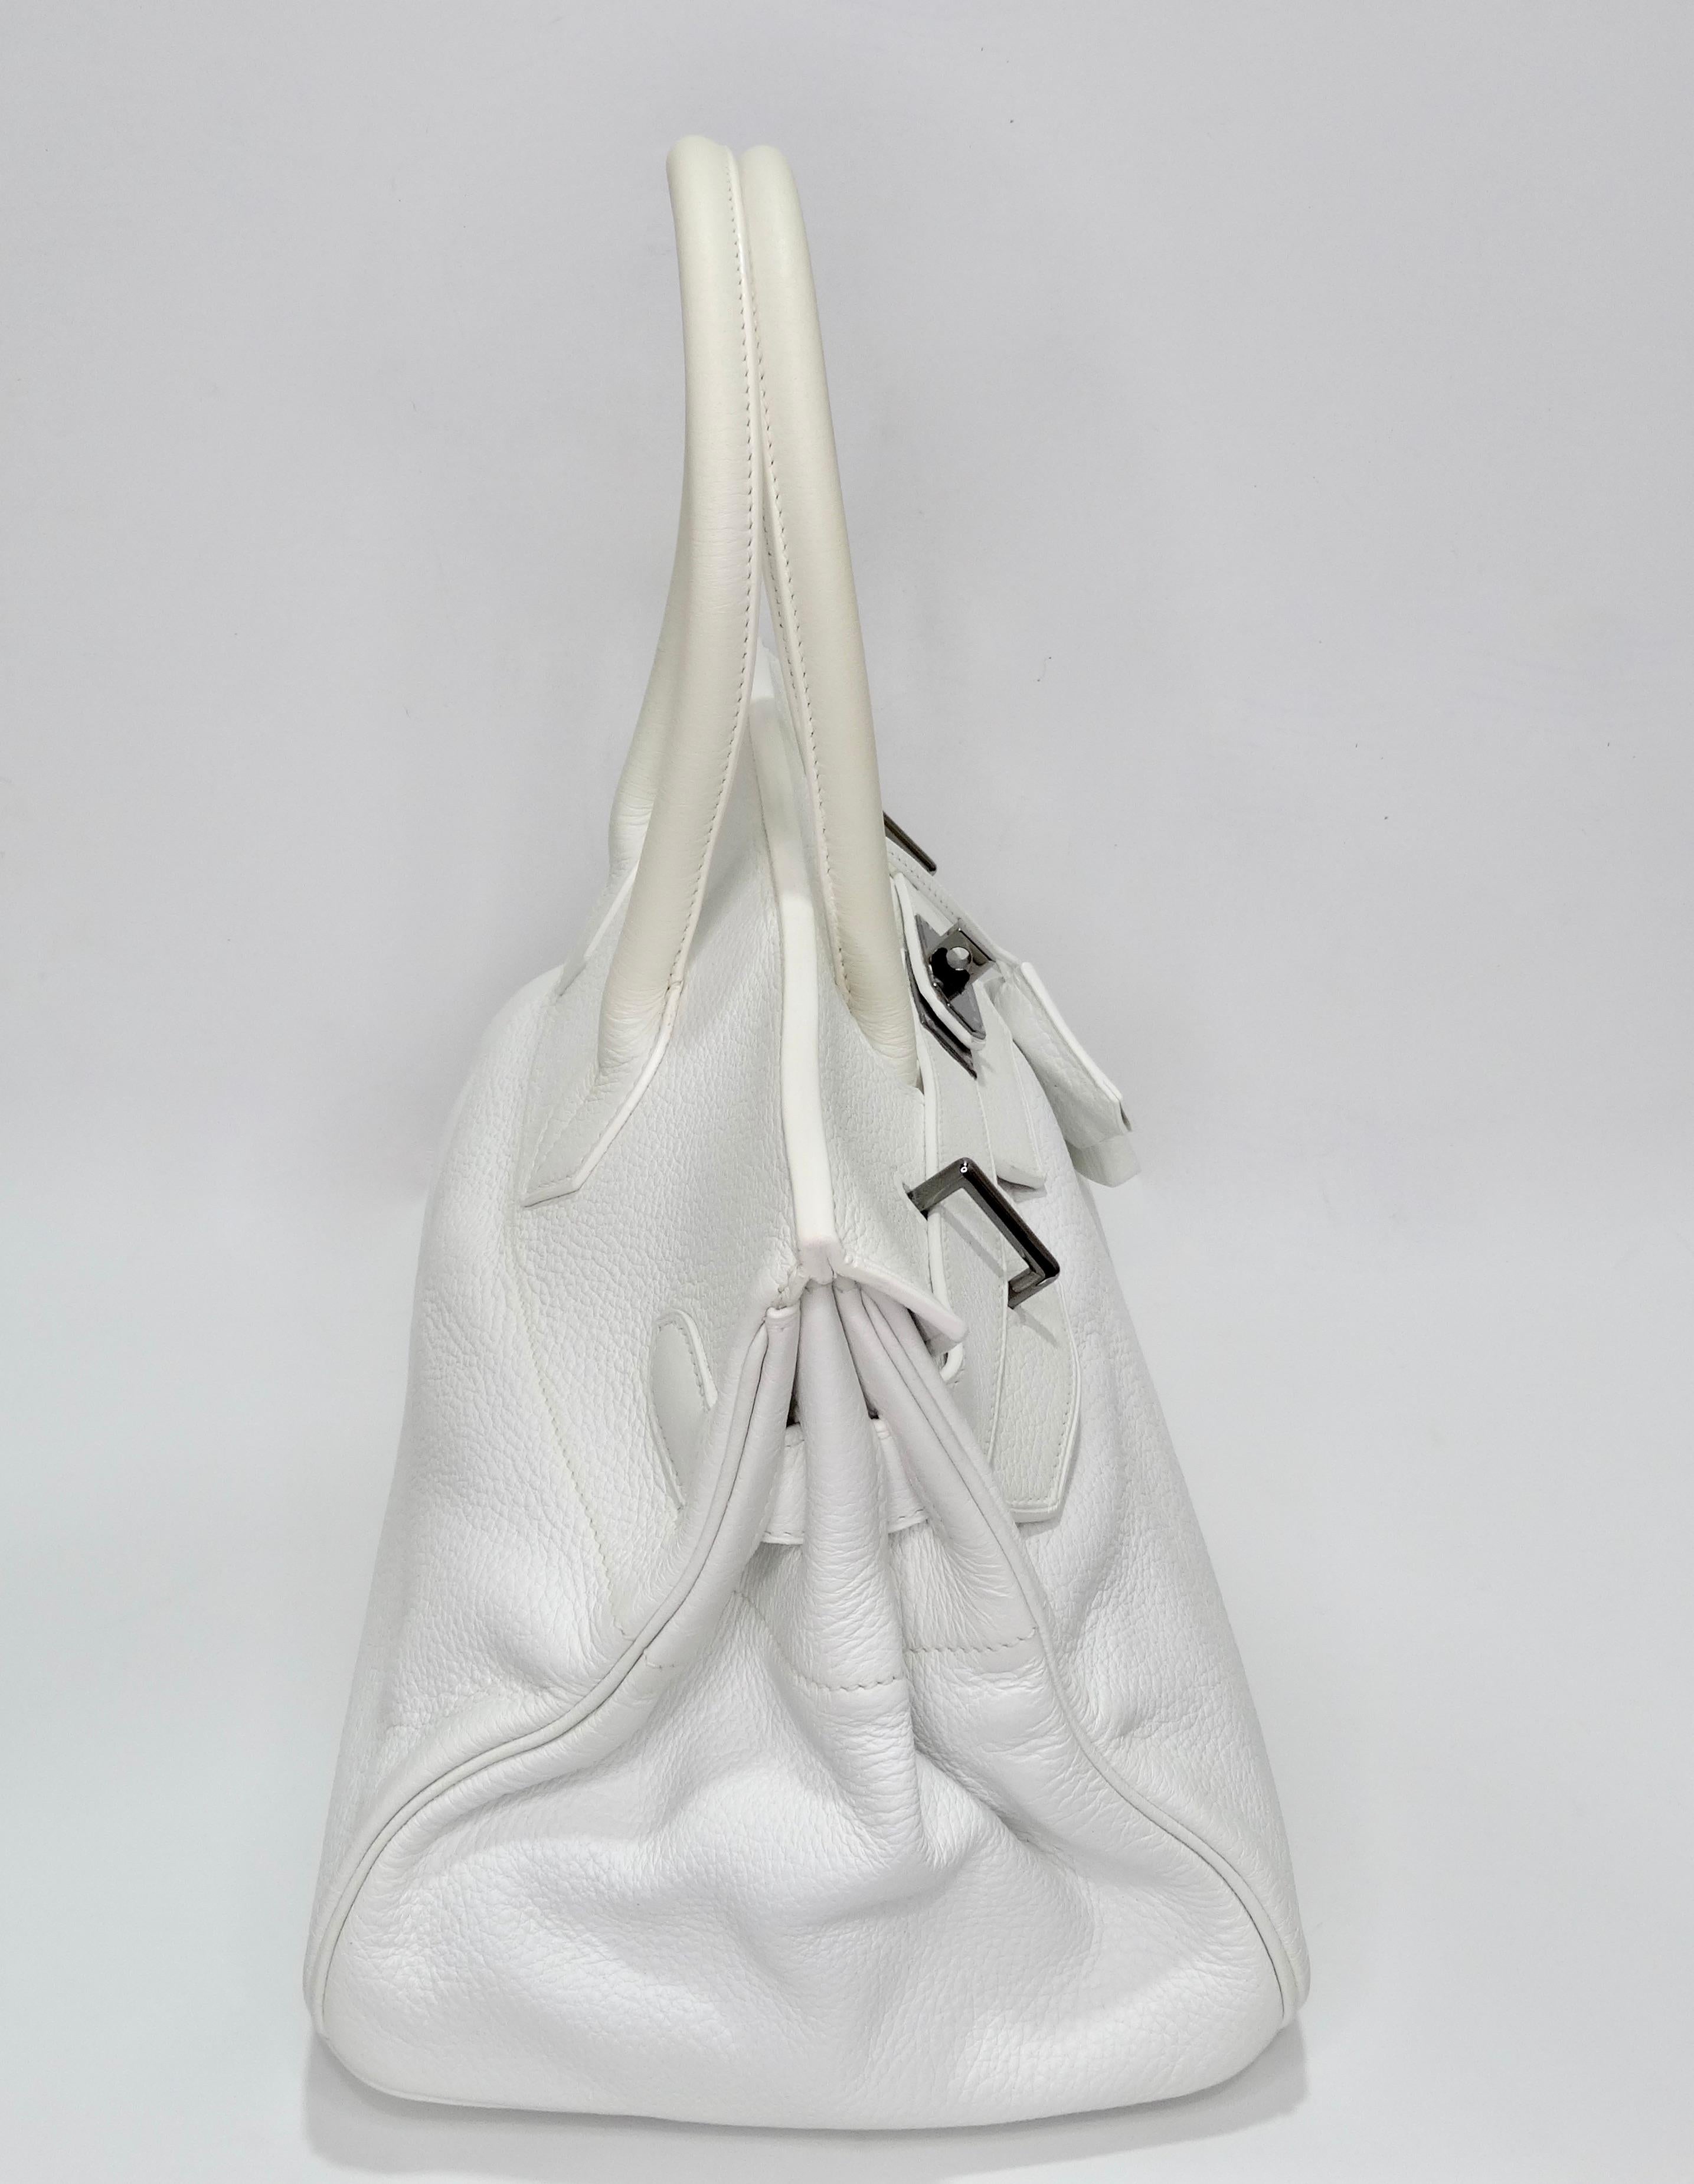 Eine klassische Birkin mit einem neuen Look! CIRCA 2006, diese 42 cm lange Birkin ist nach ihrem Designer John Paul Gaultier benannt. Ursprünglich im Jahr 2006 kreiert, hat Gaultier der klassischen Birkin einen neuen Look verpasst, der sich durch